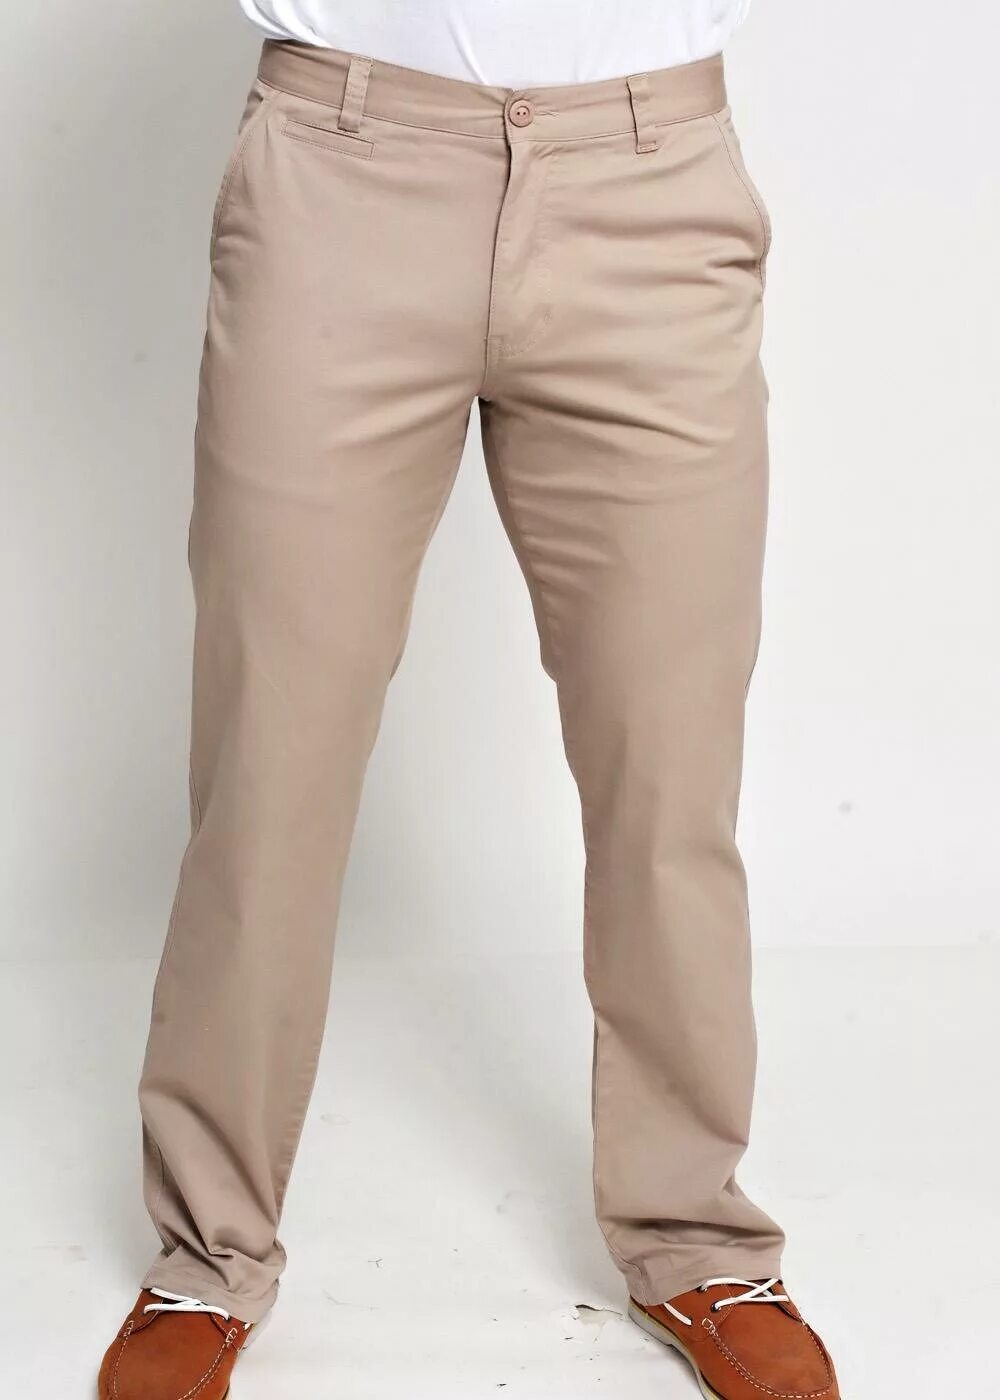 Брюки светлые купить. Мужские брюки Clever модель 593493. Бежевые брюки мужские. Бежевые штаны мужские. Бежевые классические брюки мужские.